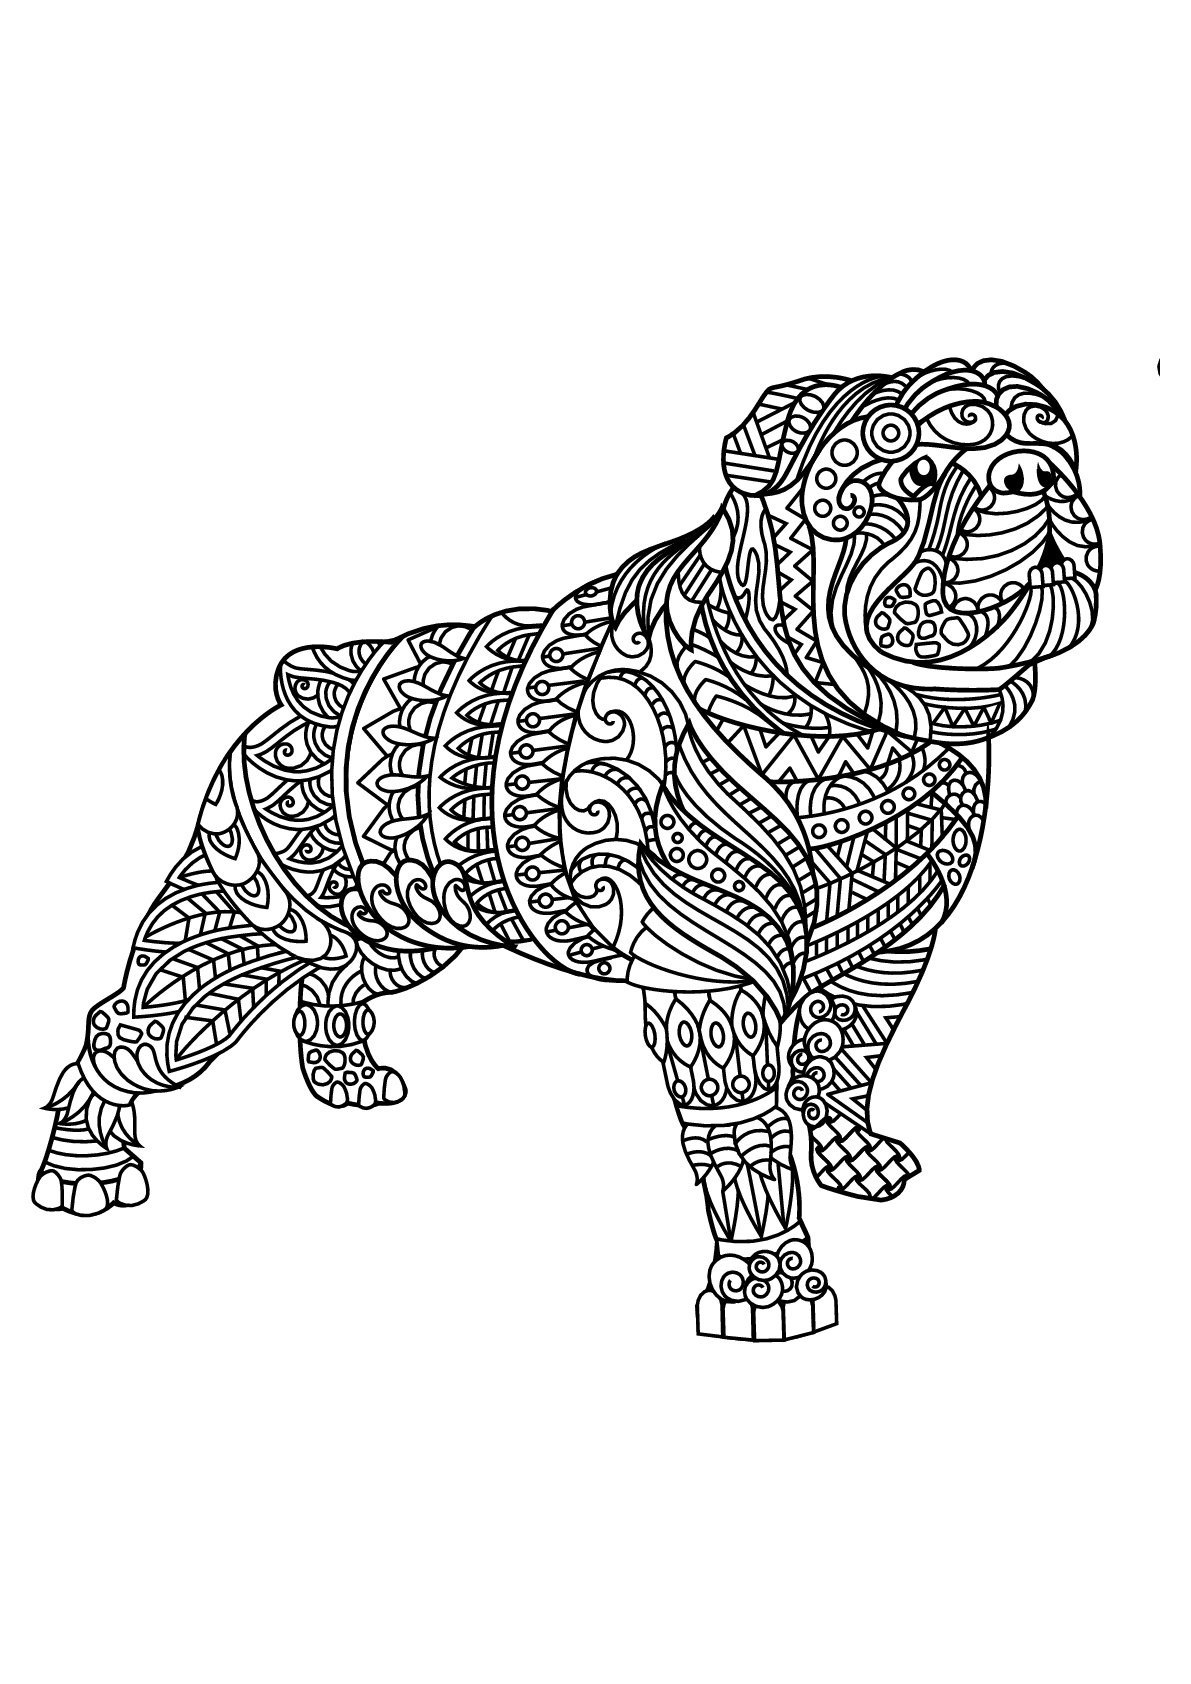 Bulldog, con patrones armoniosos y complejos